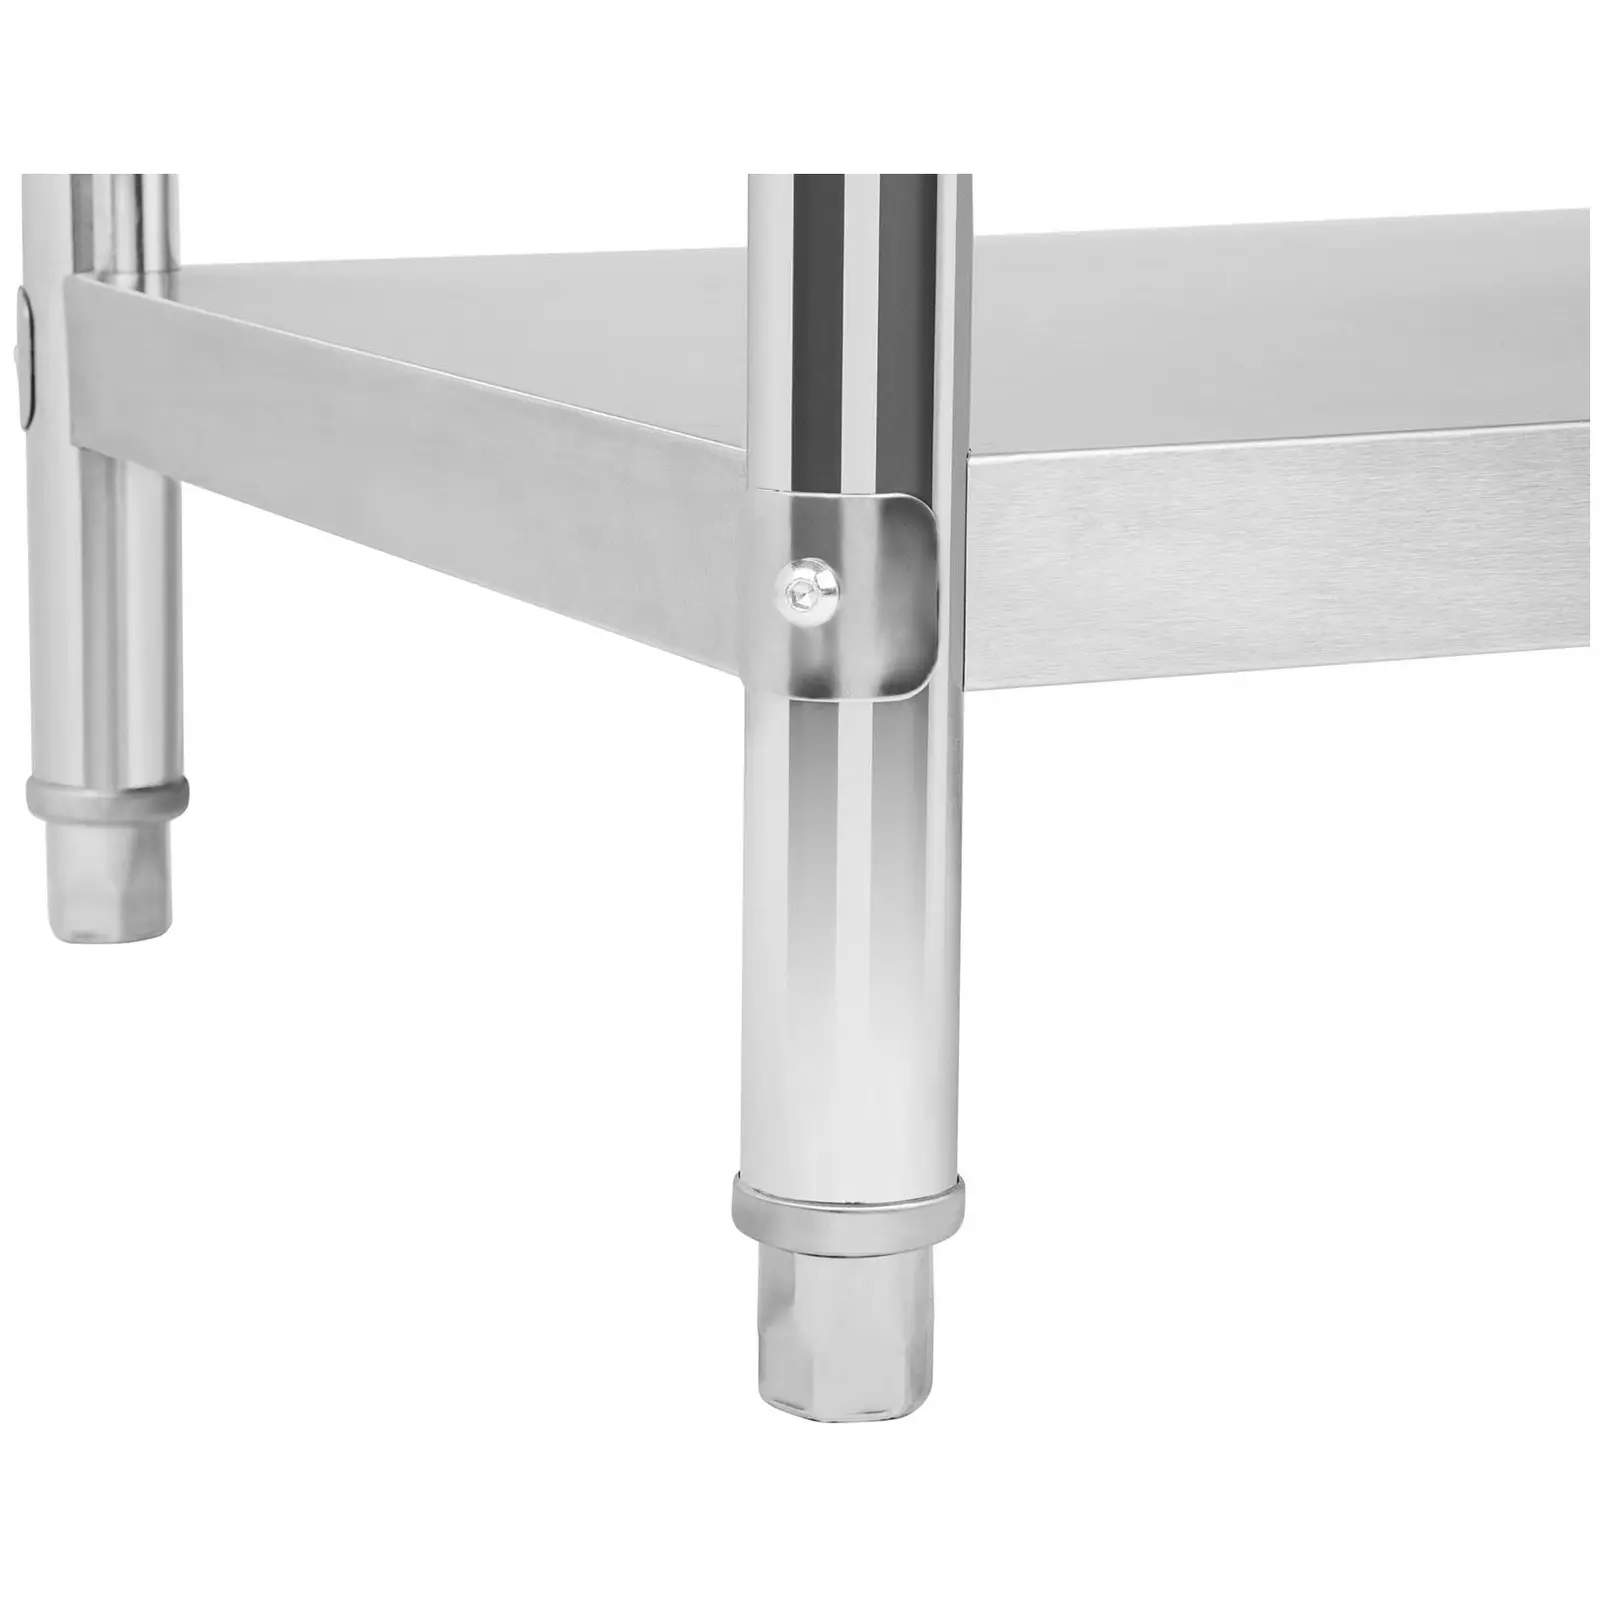 Nerezový pracovní stůl - 180 x 60 cm - s lemy - 182 kg